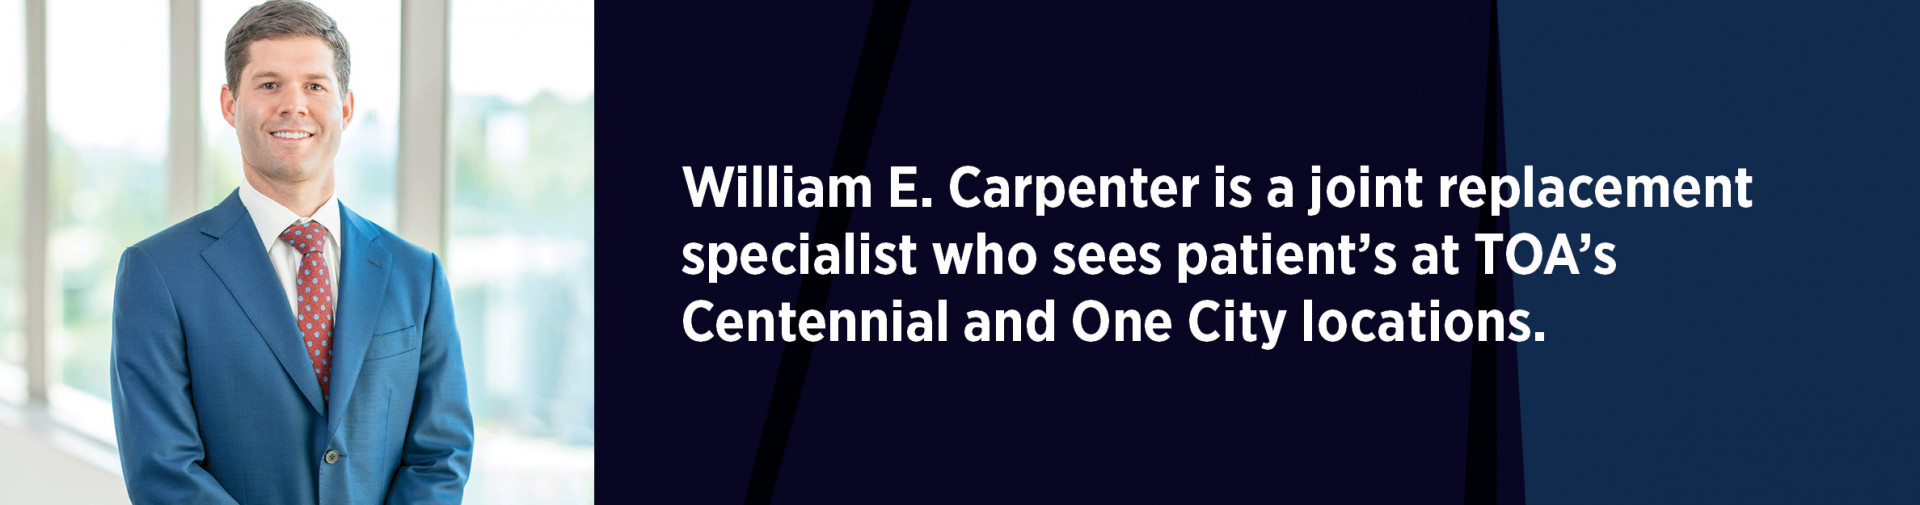 William E. Carpentar